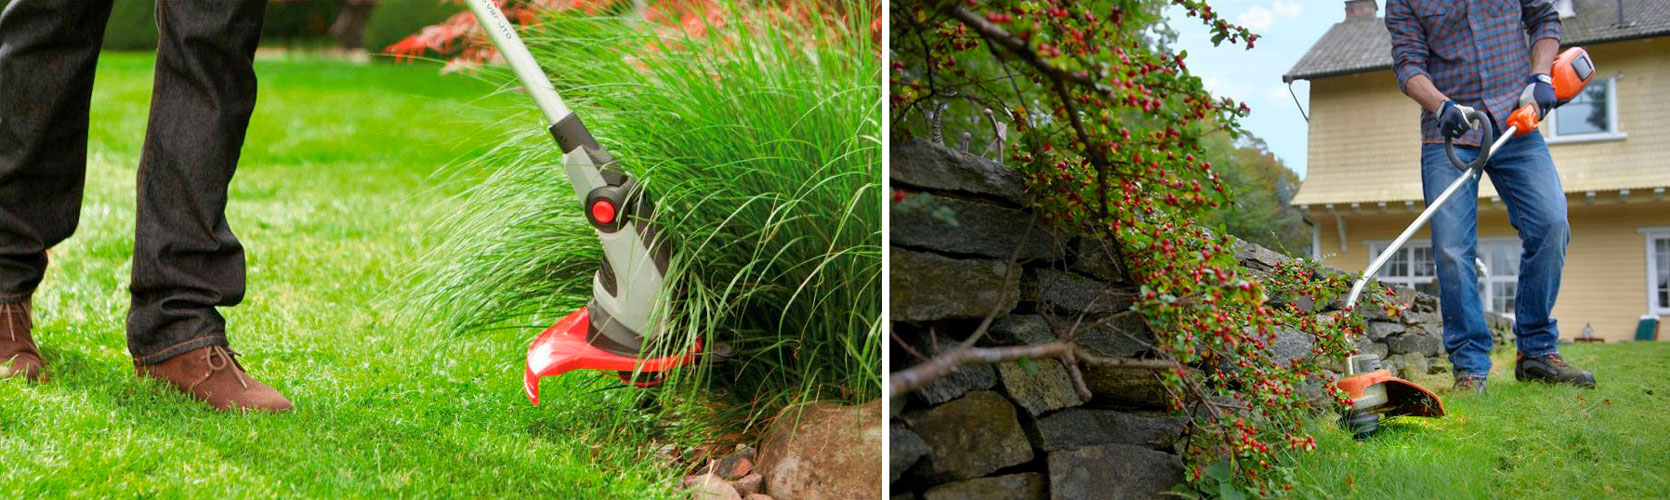 Триммер или газонокосилка — что выбрать?